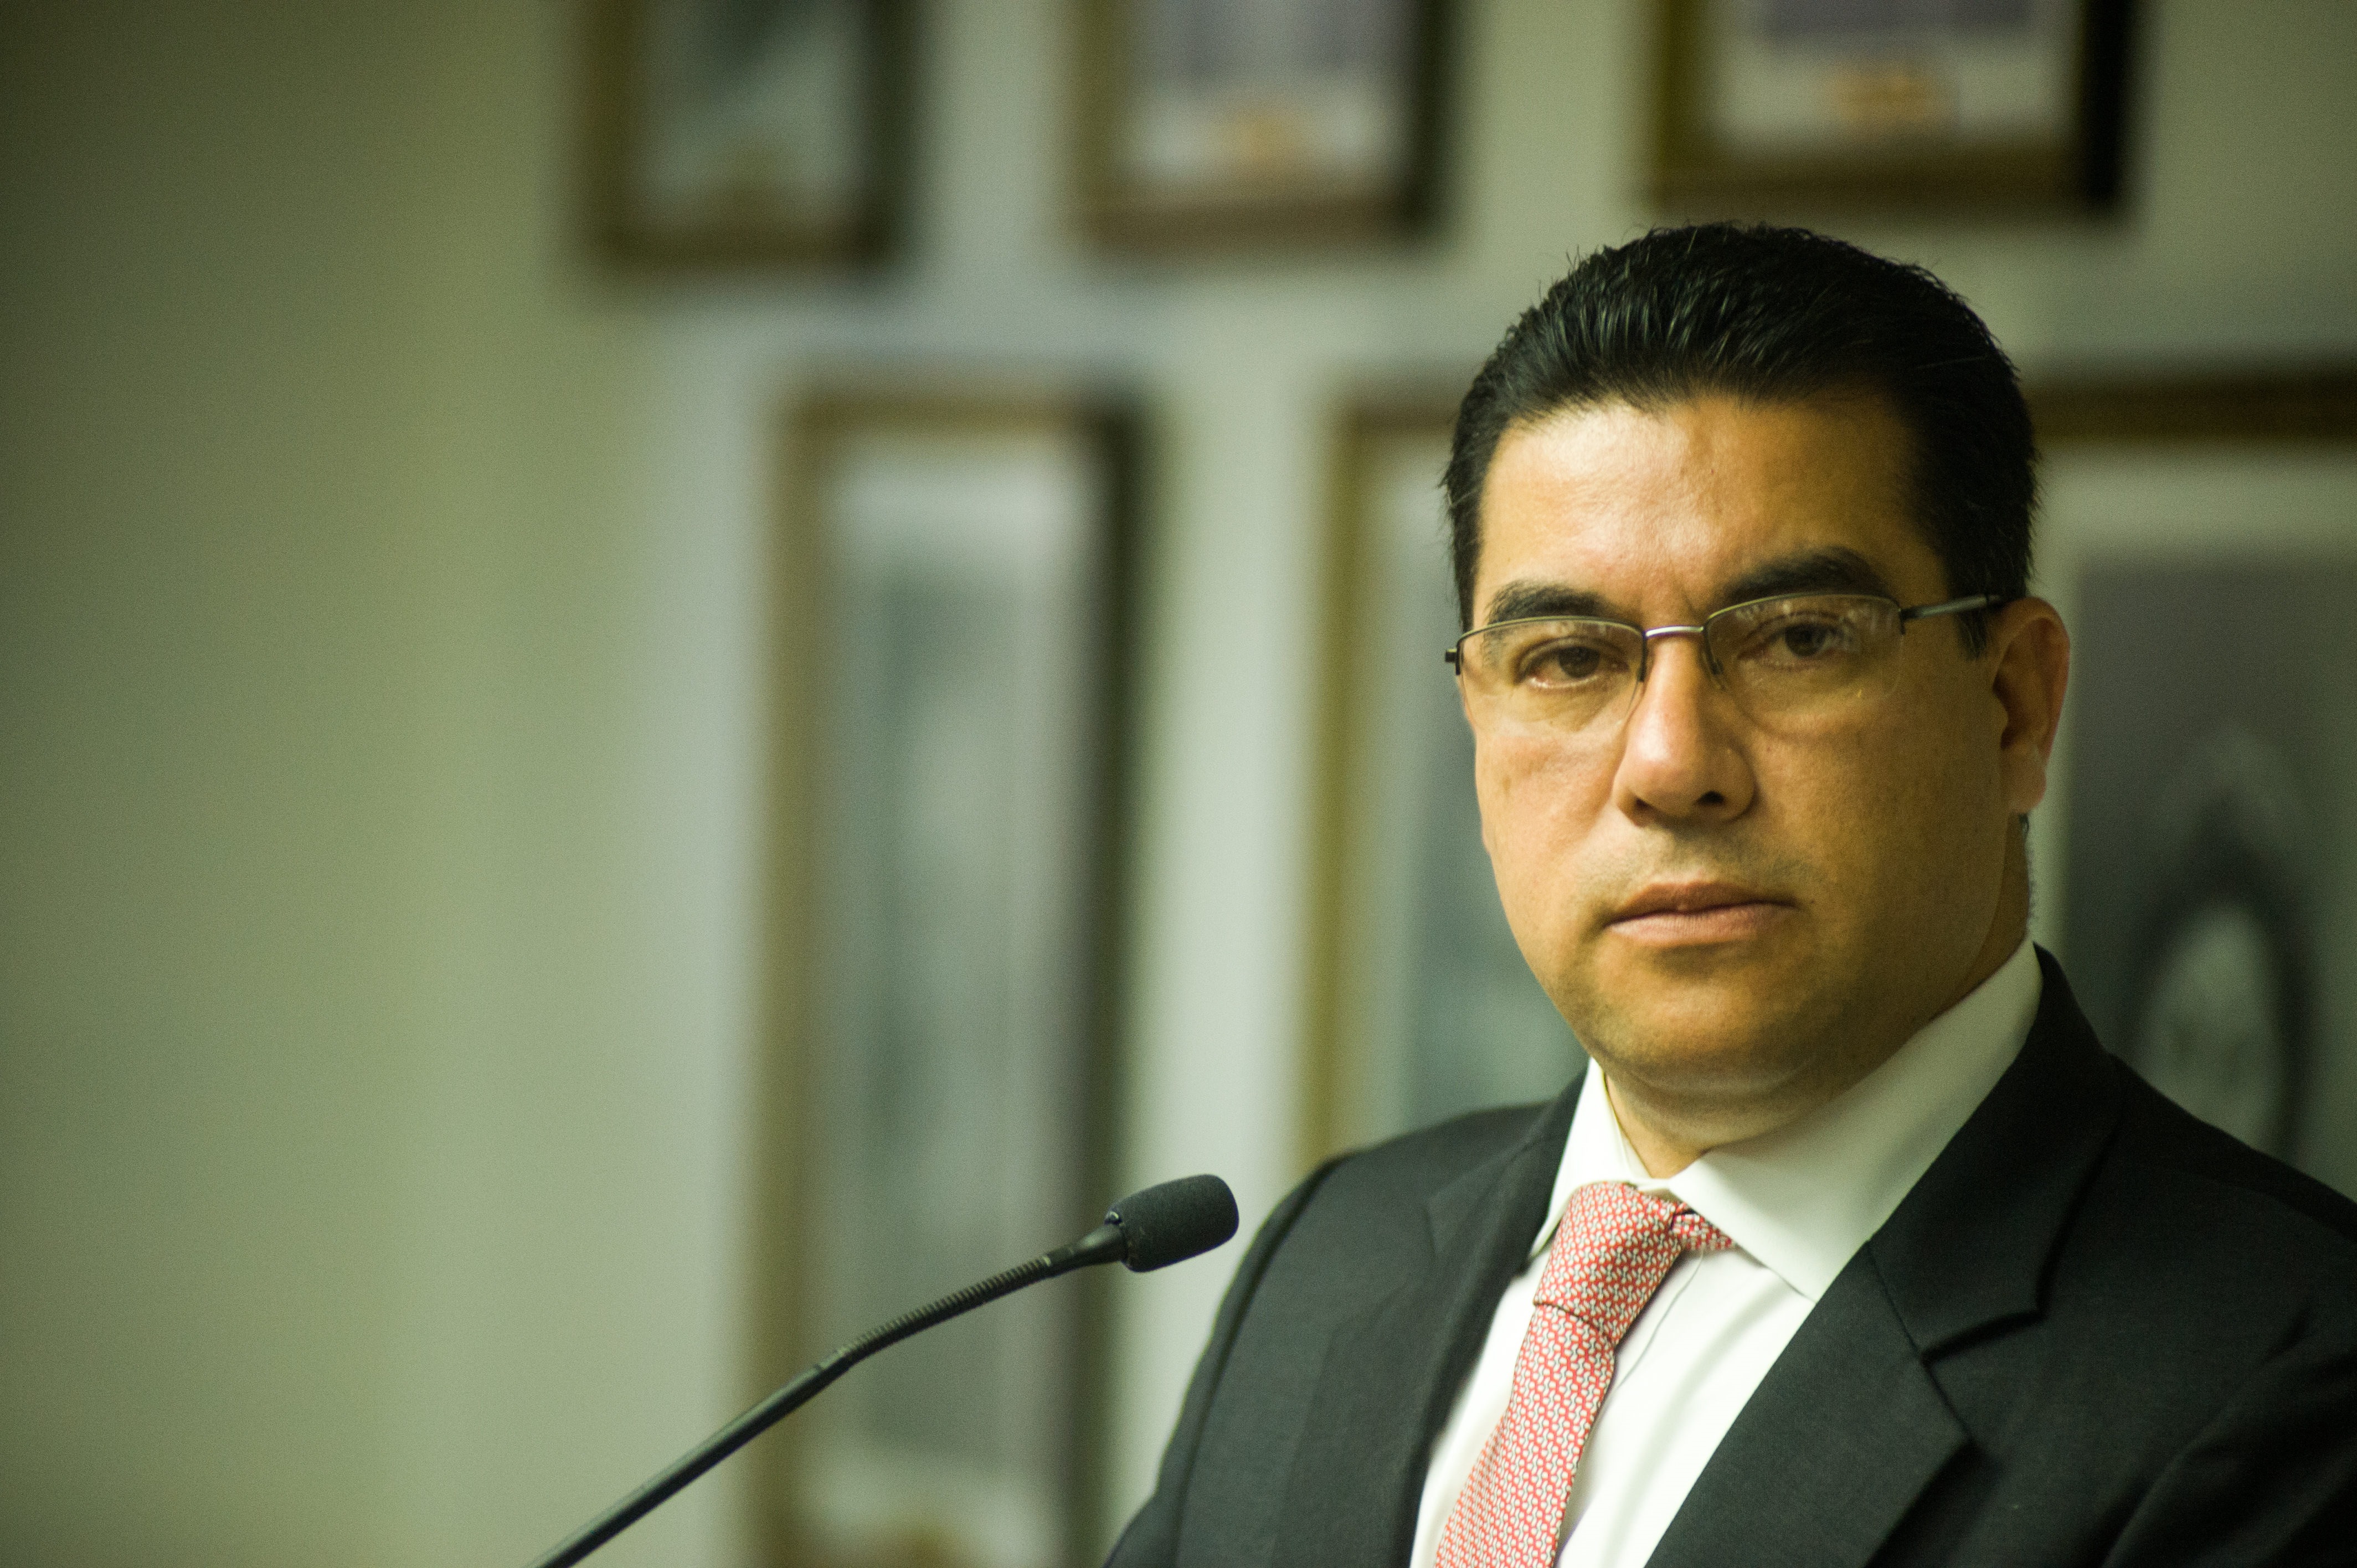 El fiscal general de El Salvador, Raúl Melara, dijo que enviará al FBI las pruebas que recolectó su oficina sobre los recientes hechos de violencia en el país (CAMILO FREEDMAN / ZUMA PRESS)
